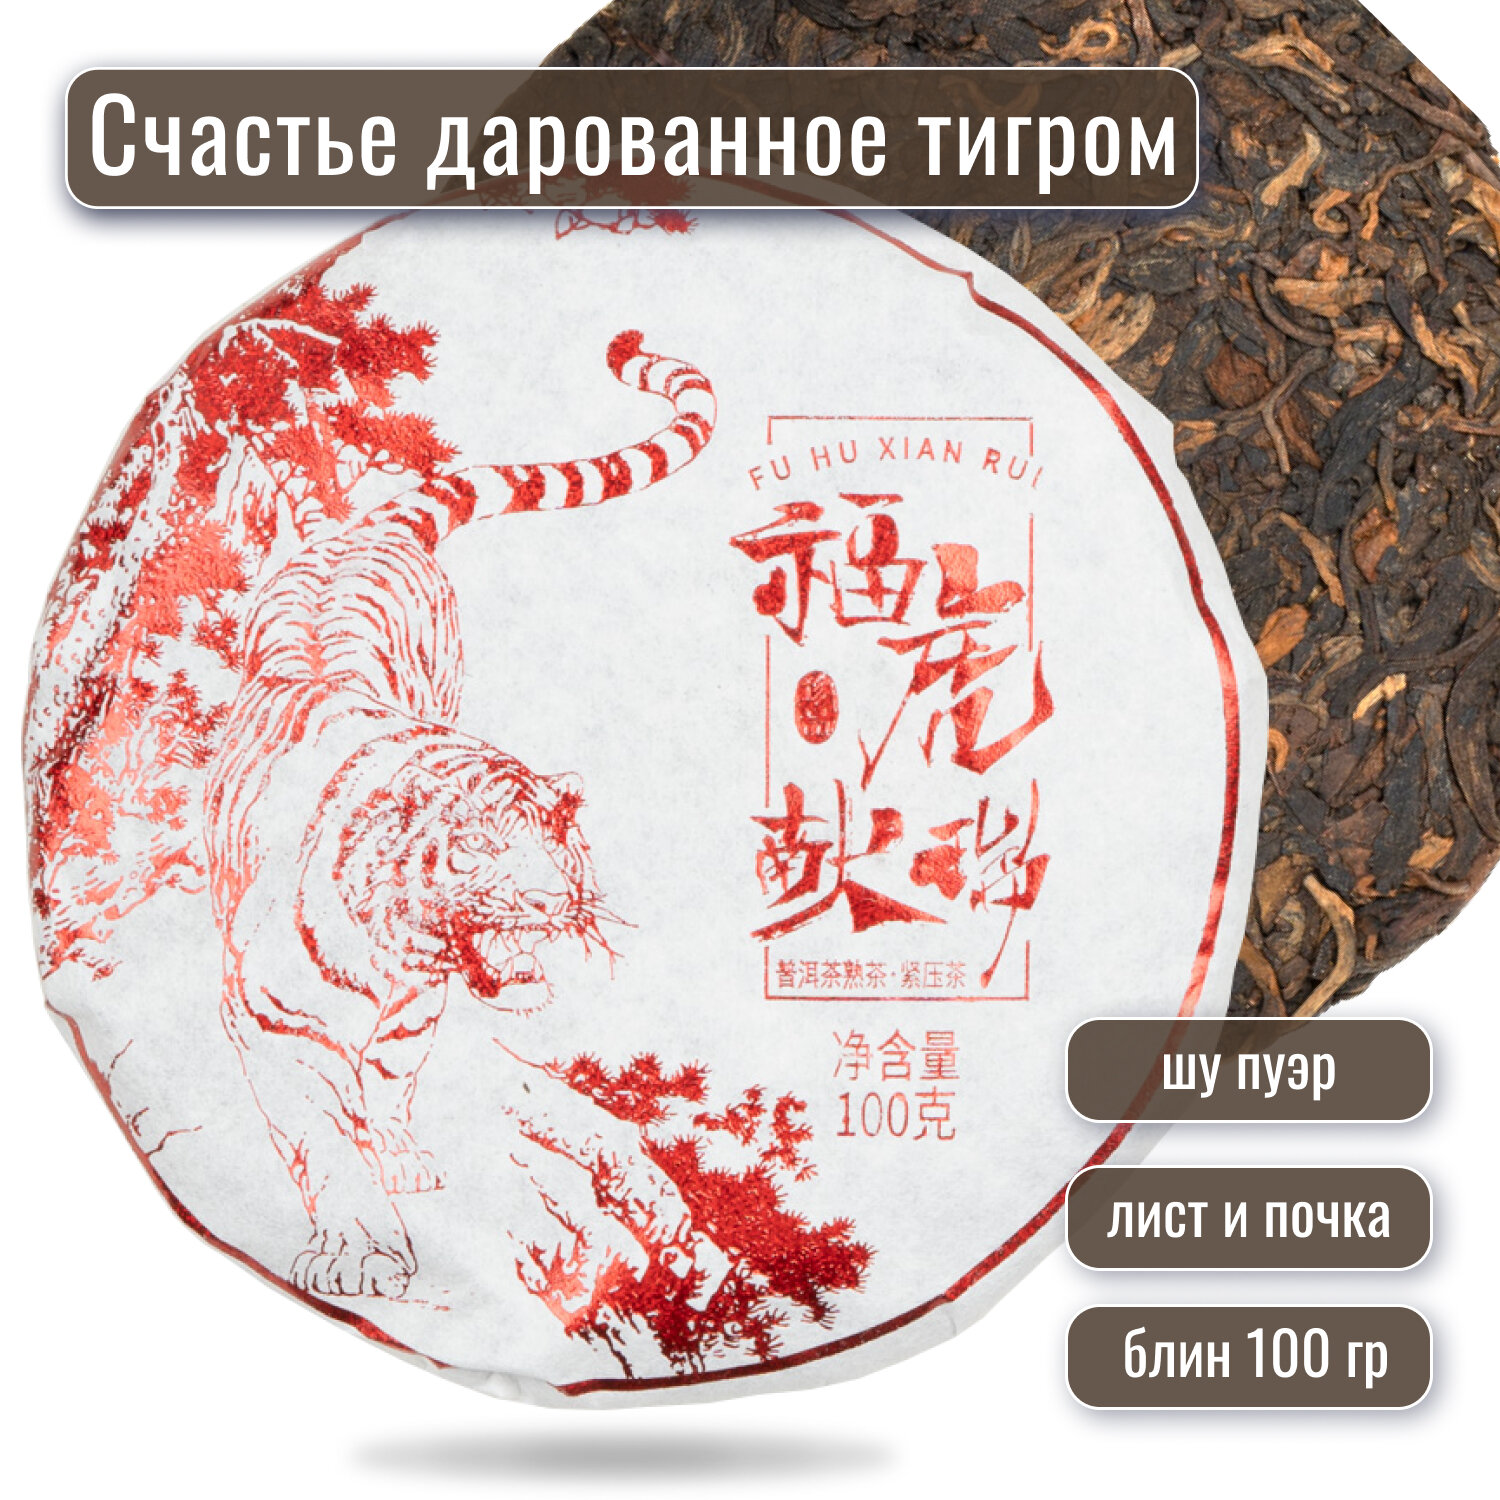 Шу пуэр чай "Счастье, дарованное тигром", 100 грамм прессованный блин, 2021 год, ч/ф Гу И